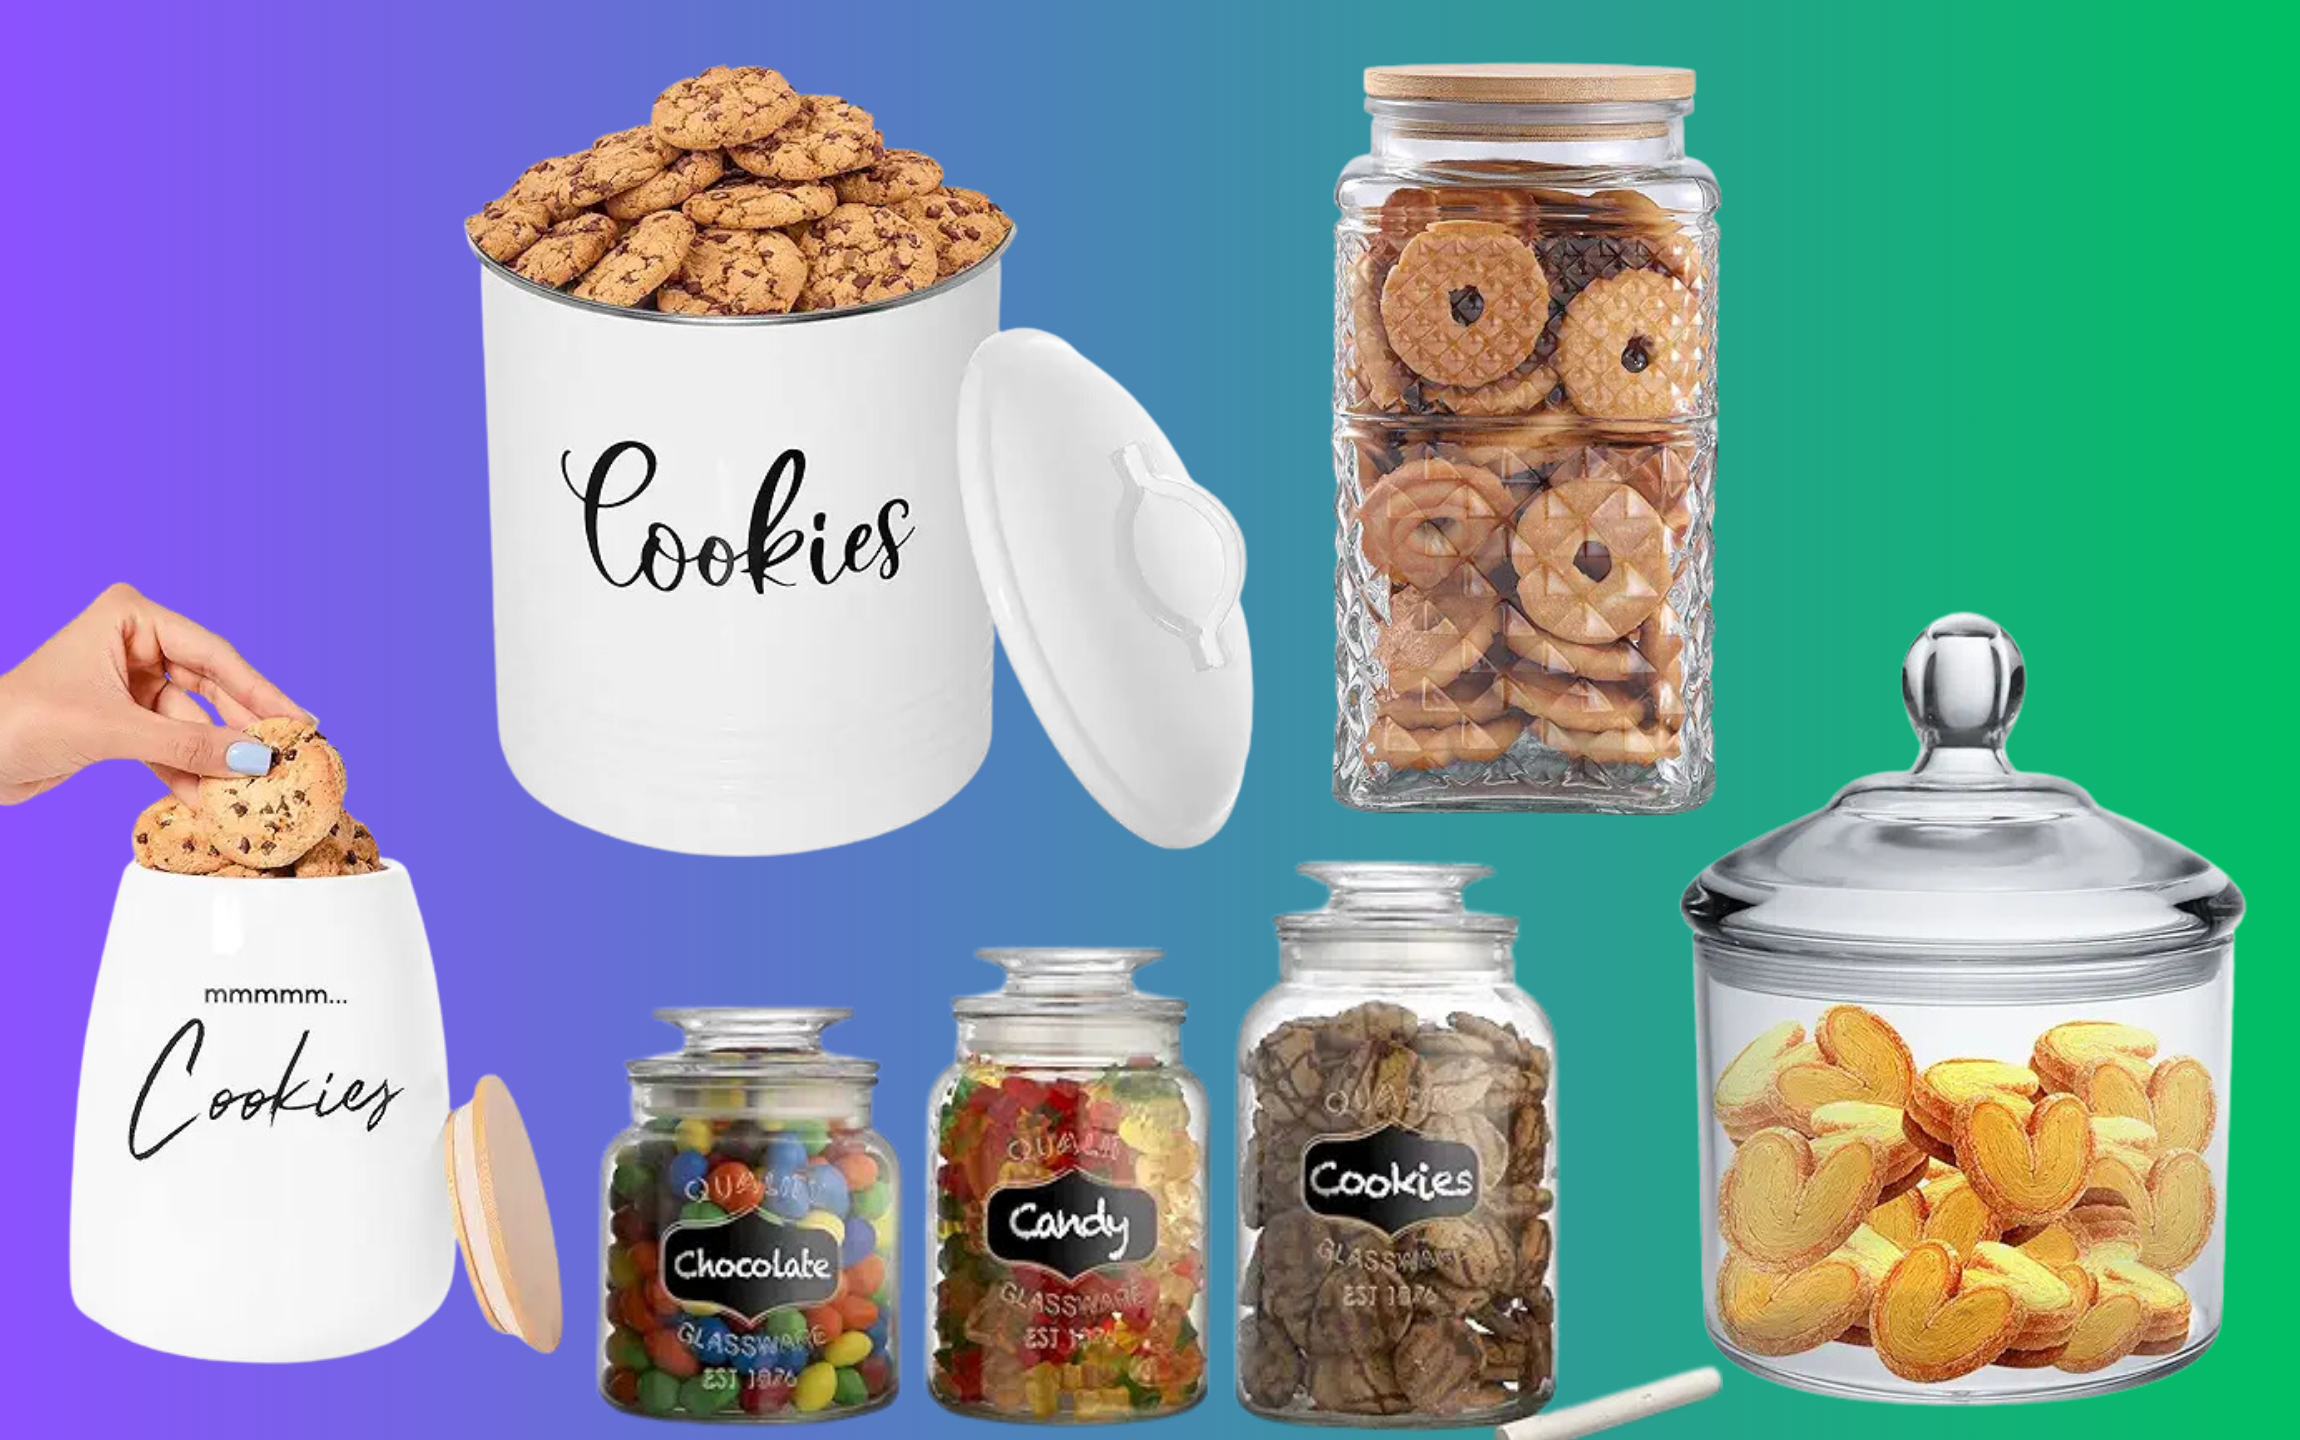 Cookie jar Gifts Under $30 or Under $50